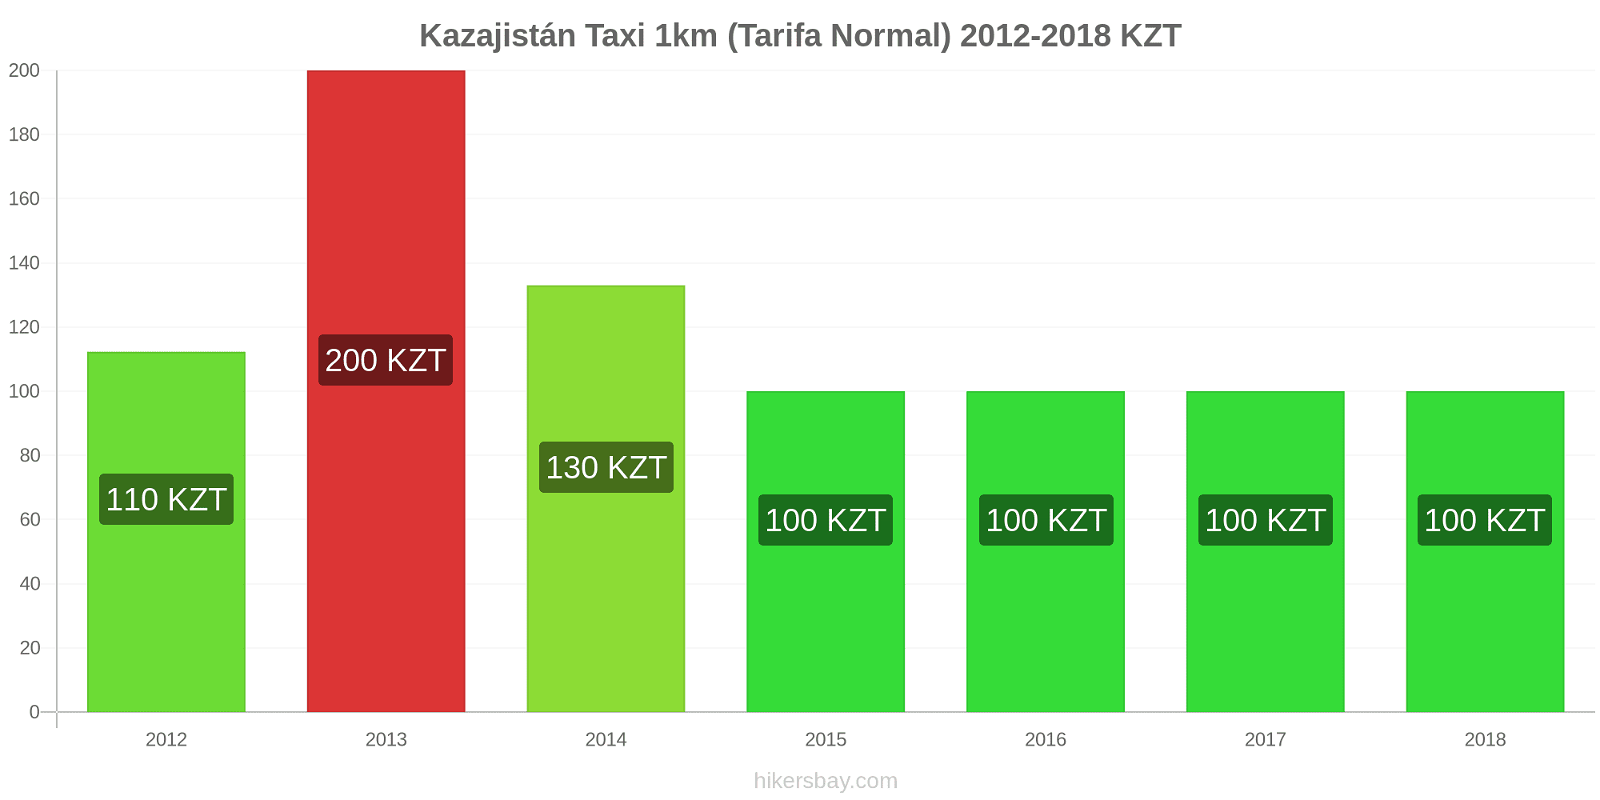 Kazajistán cambios de precios Taxi 1km (tarifa normal) hikersbay.com